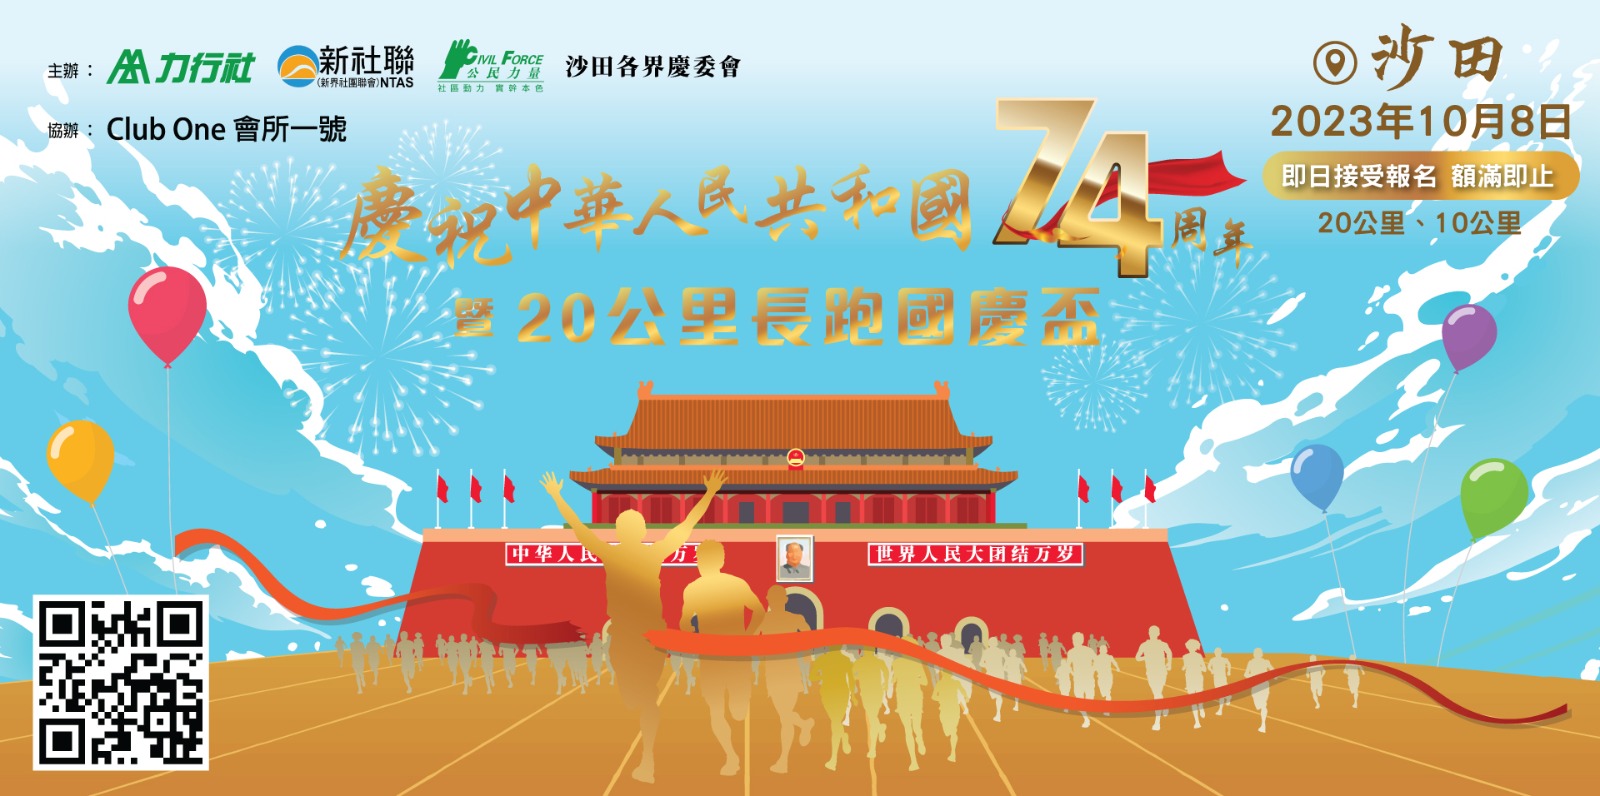 慶祝中華人民共和國74周年暨20公里長跑國慶盃